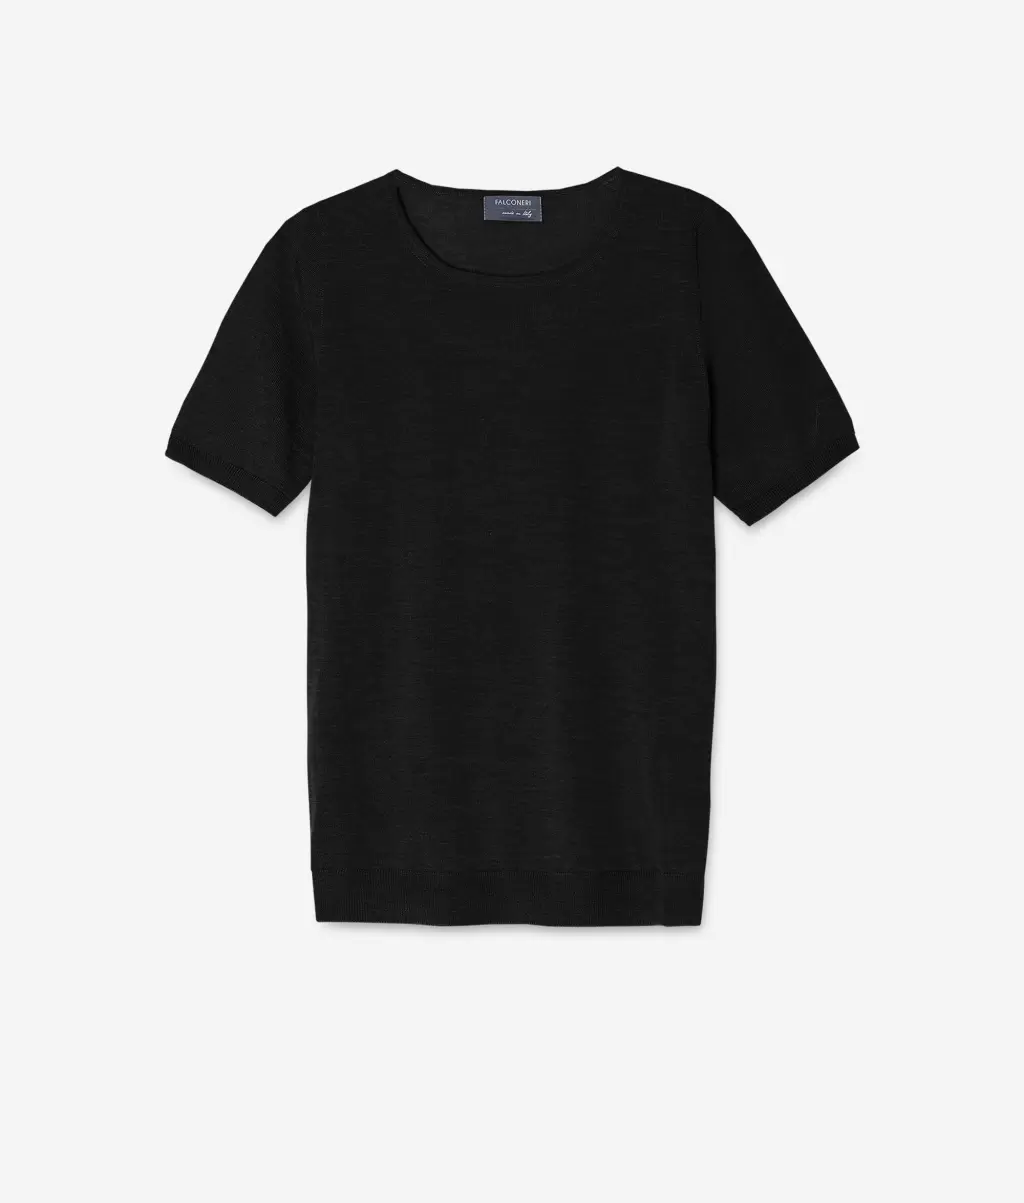 Black Kobieta Topy I T-Shirty Pulower Z Krótkim Rękawem Z Kaszmiru Ultrafine Falconeri - 3